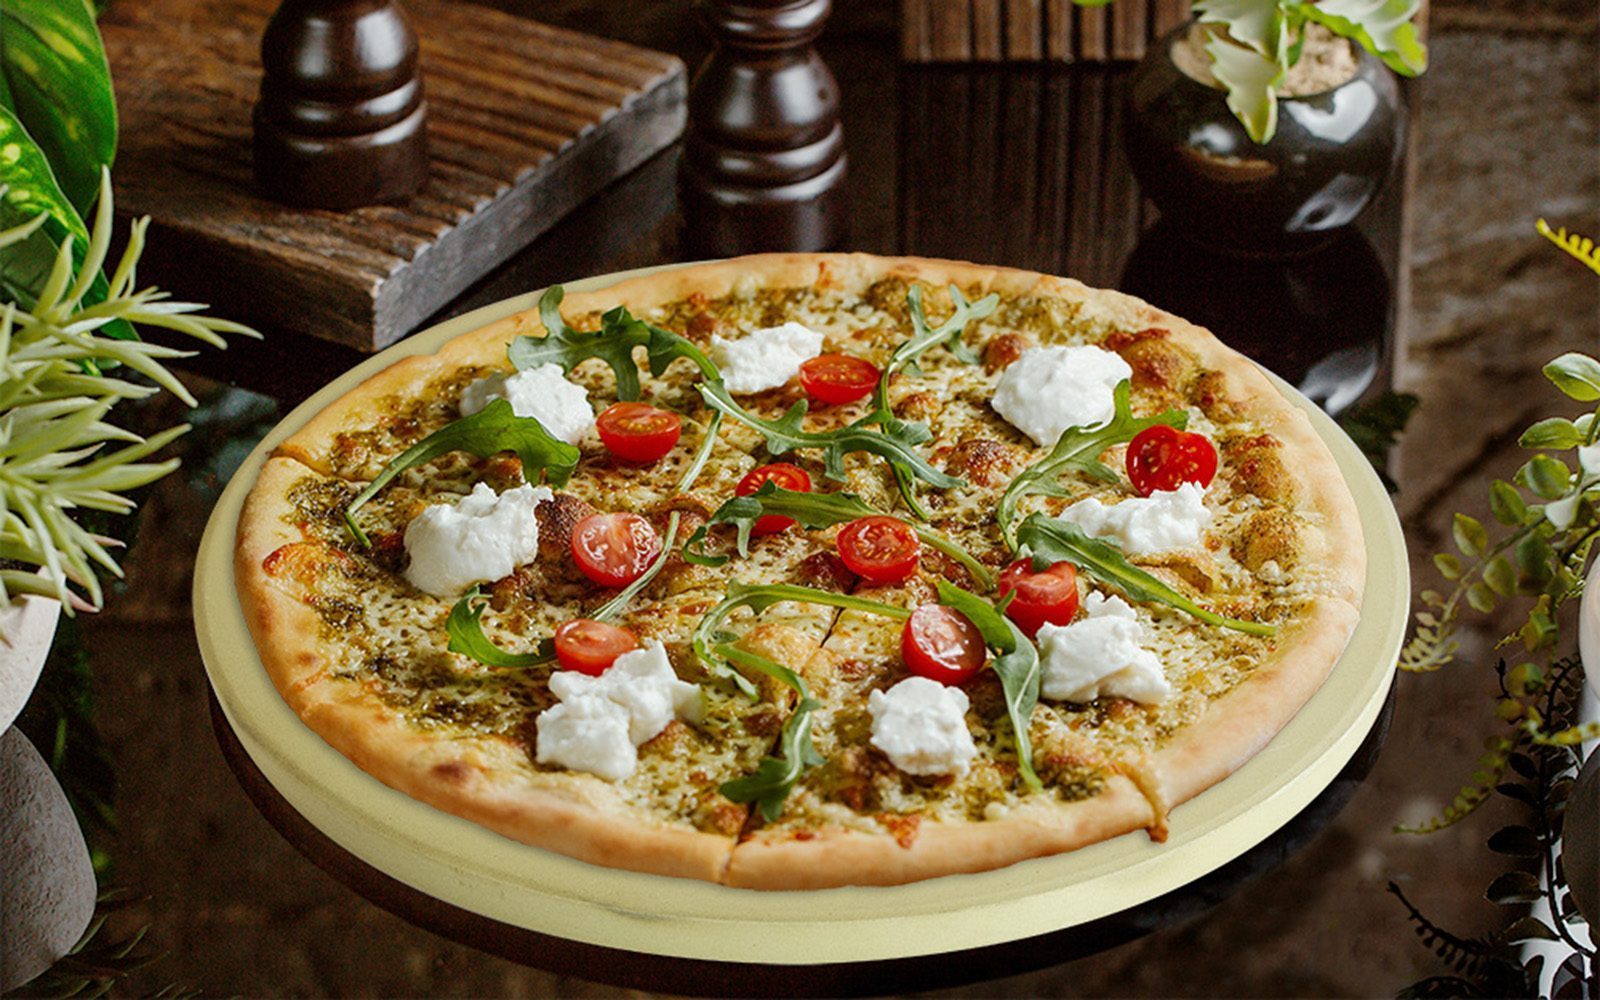 Pizzastein mit einer frisch gebackenen Pizza darauf die mit Käse, Rucolasalat und Tomaten belegt ist.